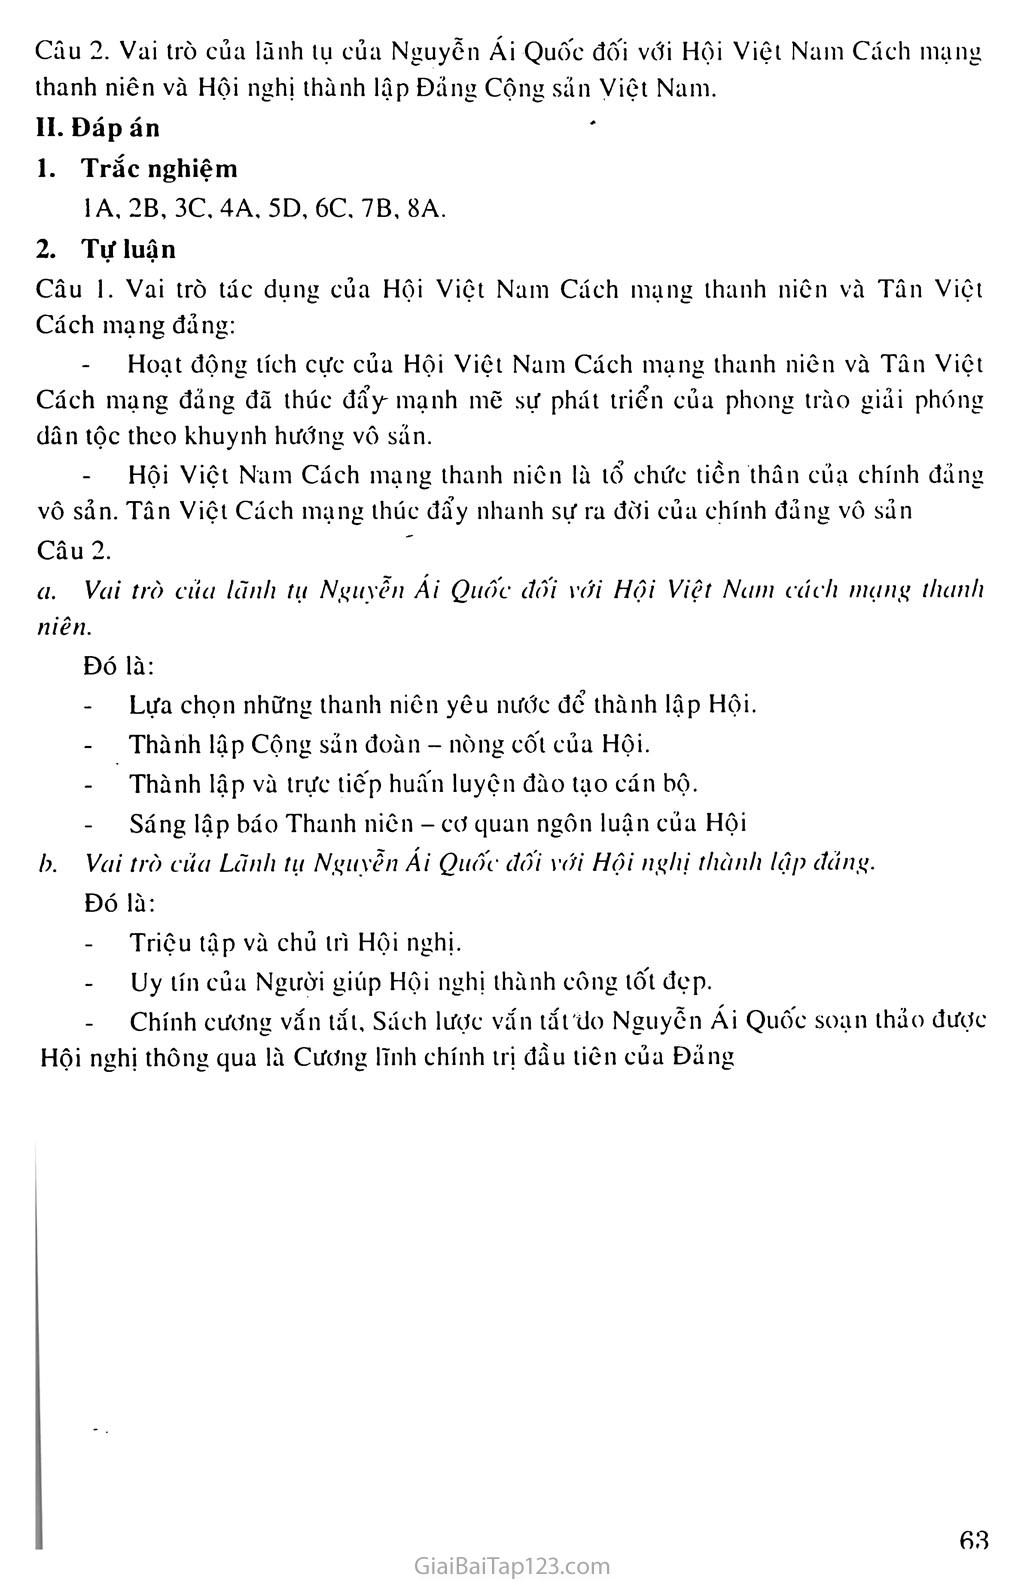 Bài 13.: Phong trào dân tộc dân chủ ở Việt Nam từ năm 1925 đến năm 1930 trang 6